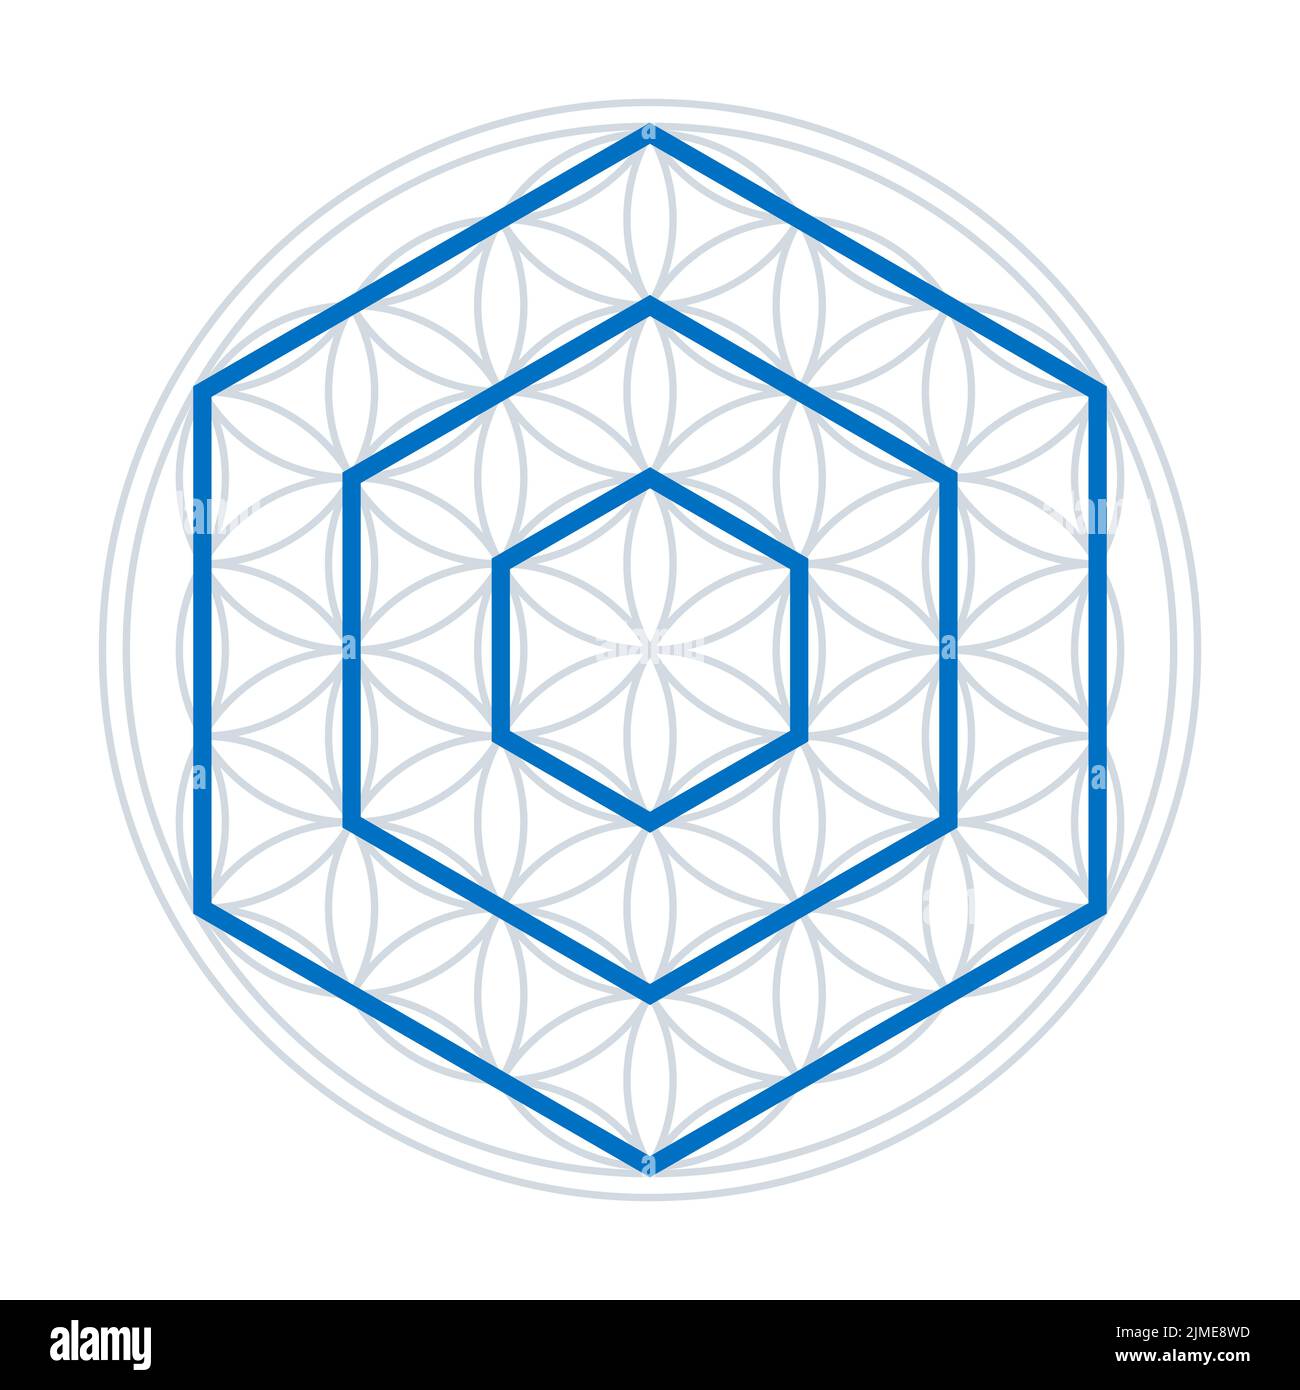 Tres hexágonos en una Flor de Vida. Polígonos azules con seis lados cada uno, las puntas hacia arriba, sobre una figura geométrica, con círculos superpuestos. Foto de stock